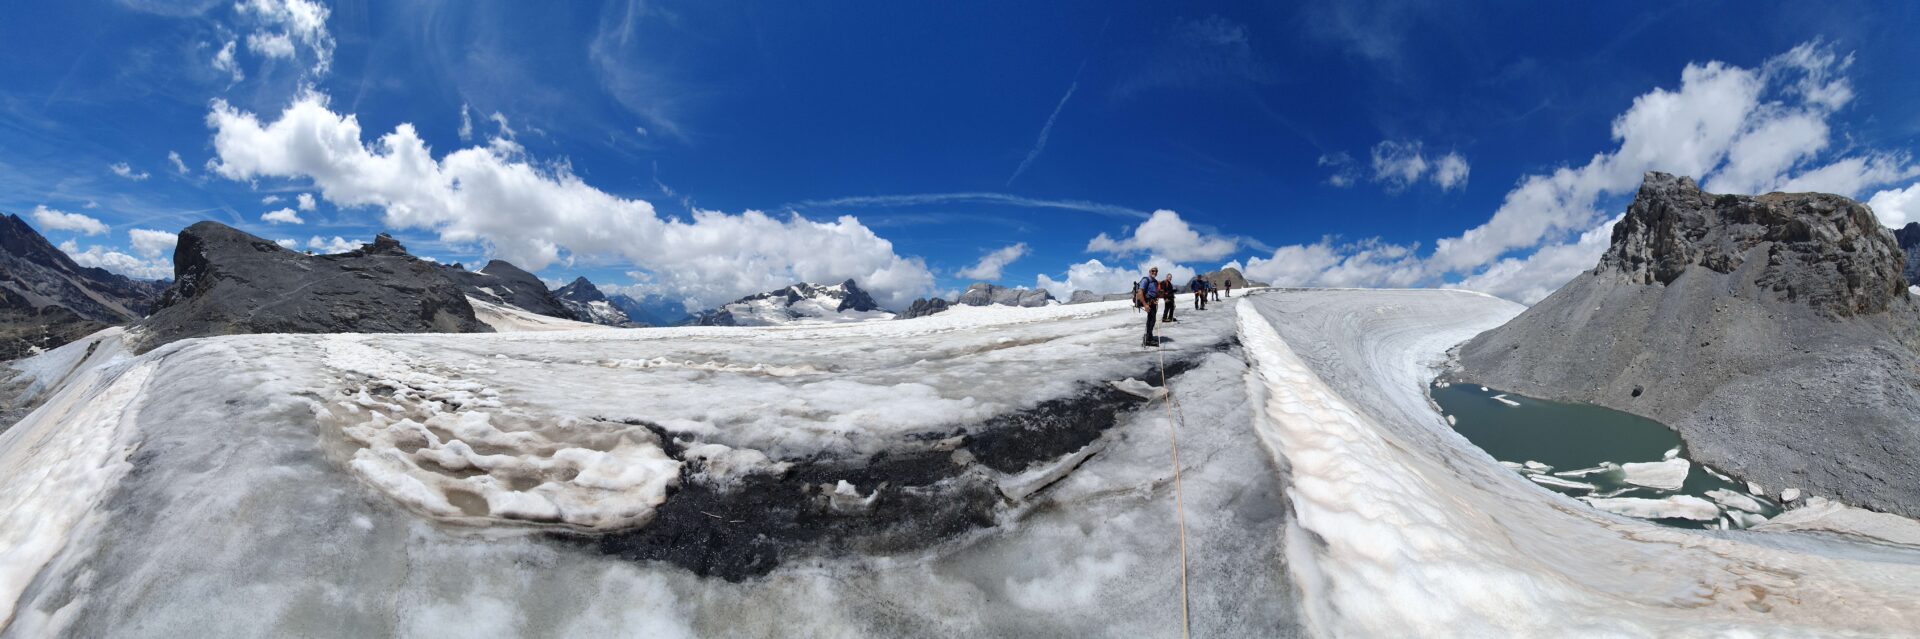 Gletschertrekking Klausenpass Planura Hüfifirn Maderanertal Alex Gisler 20220712 132548